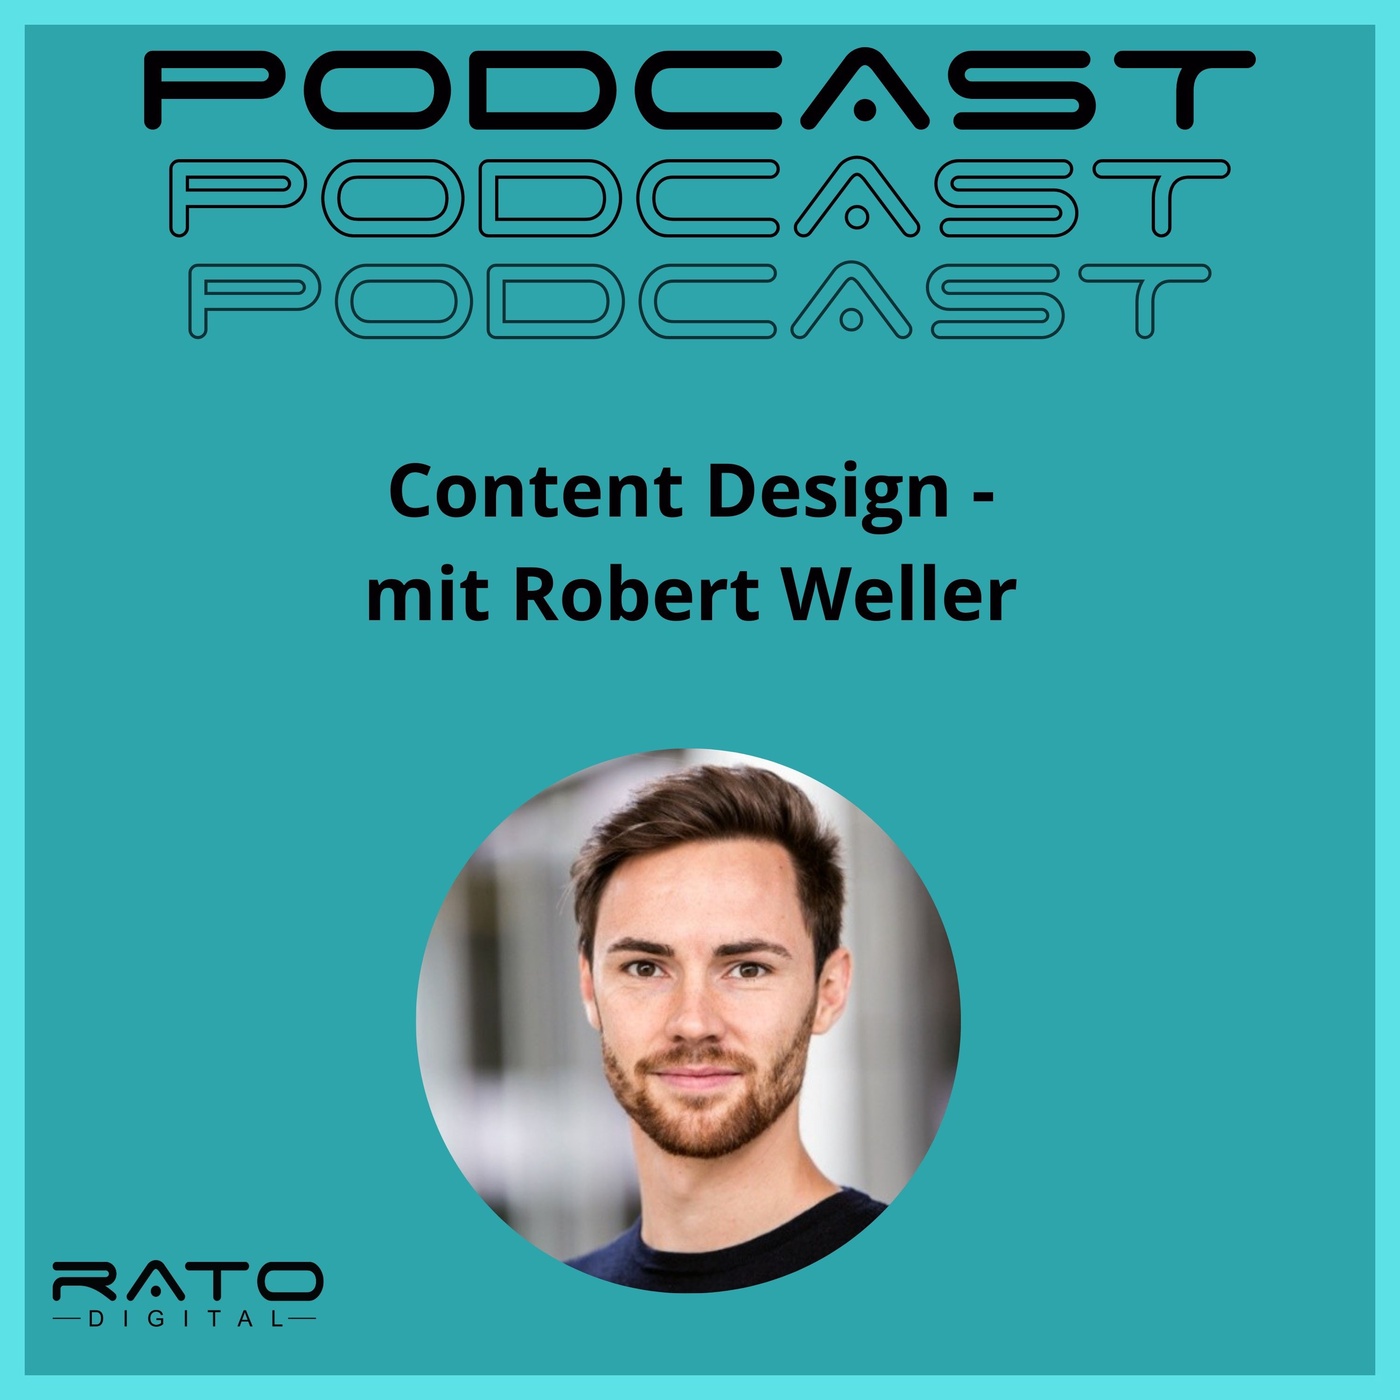 Content Design - mit Robert Weller